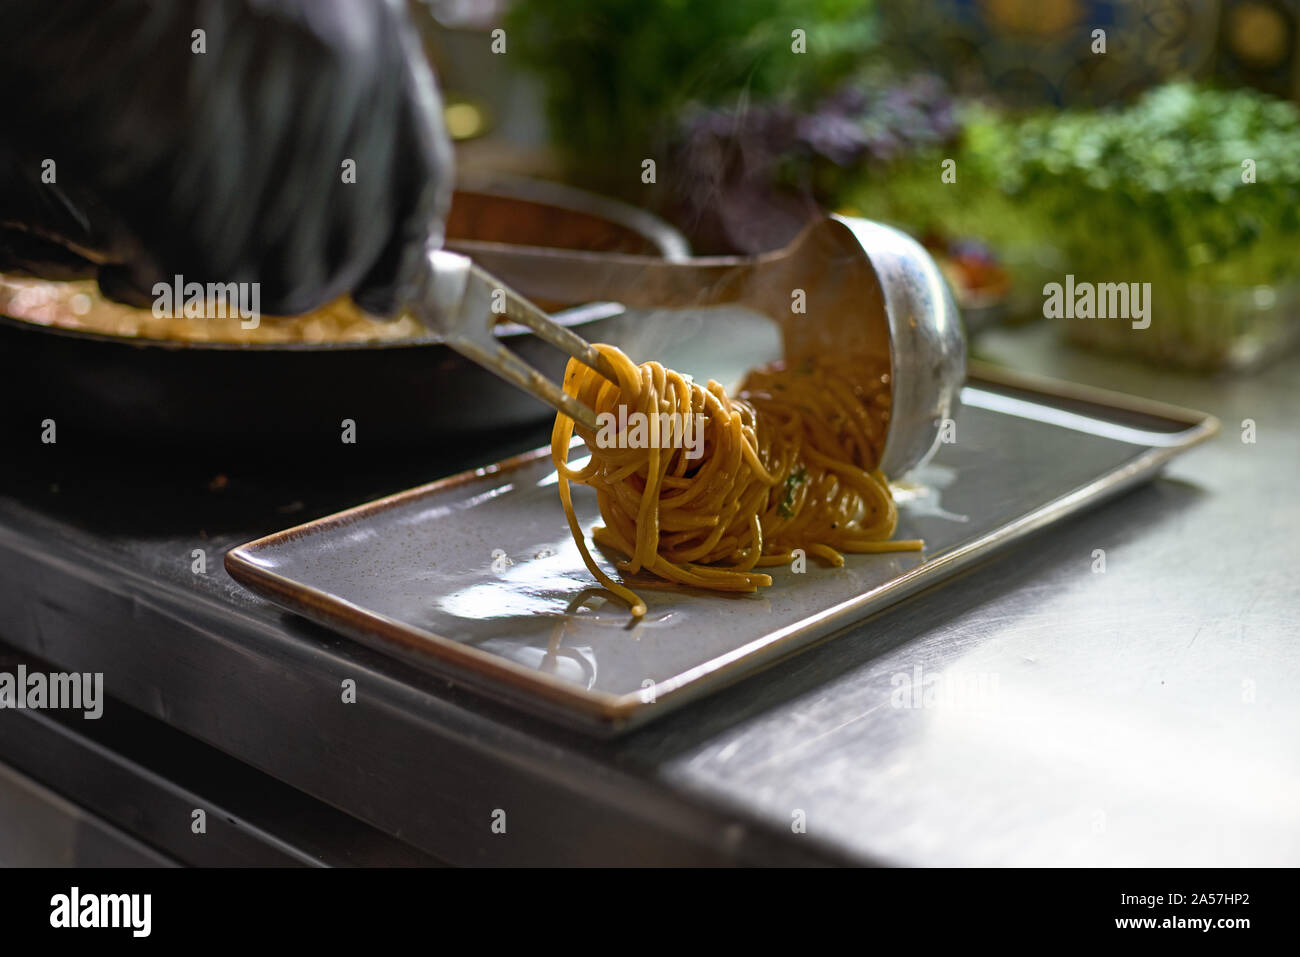 Concept alimentaire. Le chef mélange spaghetti dans une casserole les tomates et les huîtres, le plat dans un restaurant. Le processus de cuisson de spaghettis aux fruits de mer. Banque D'Images